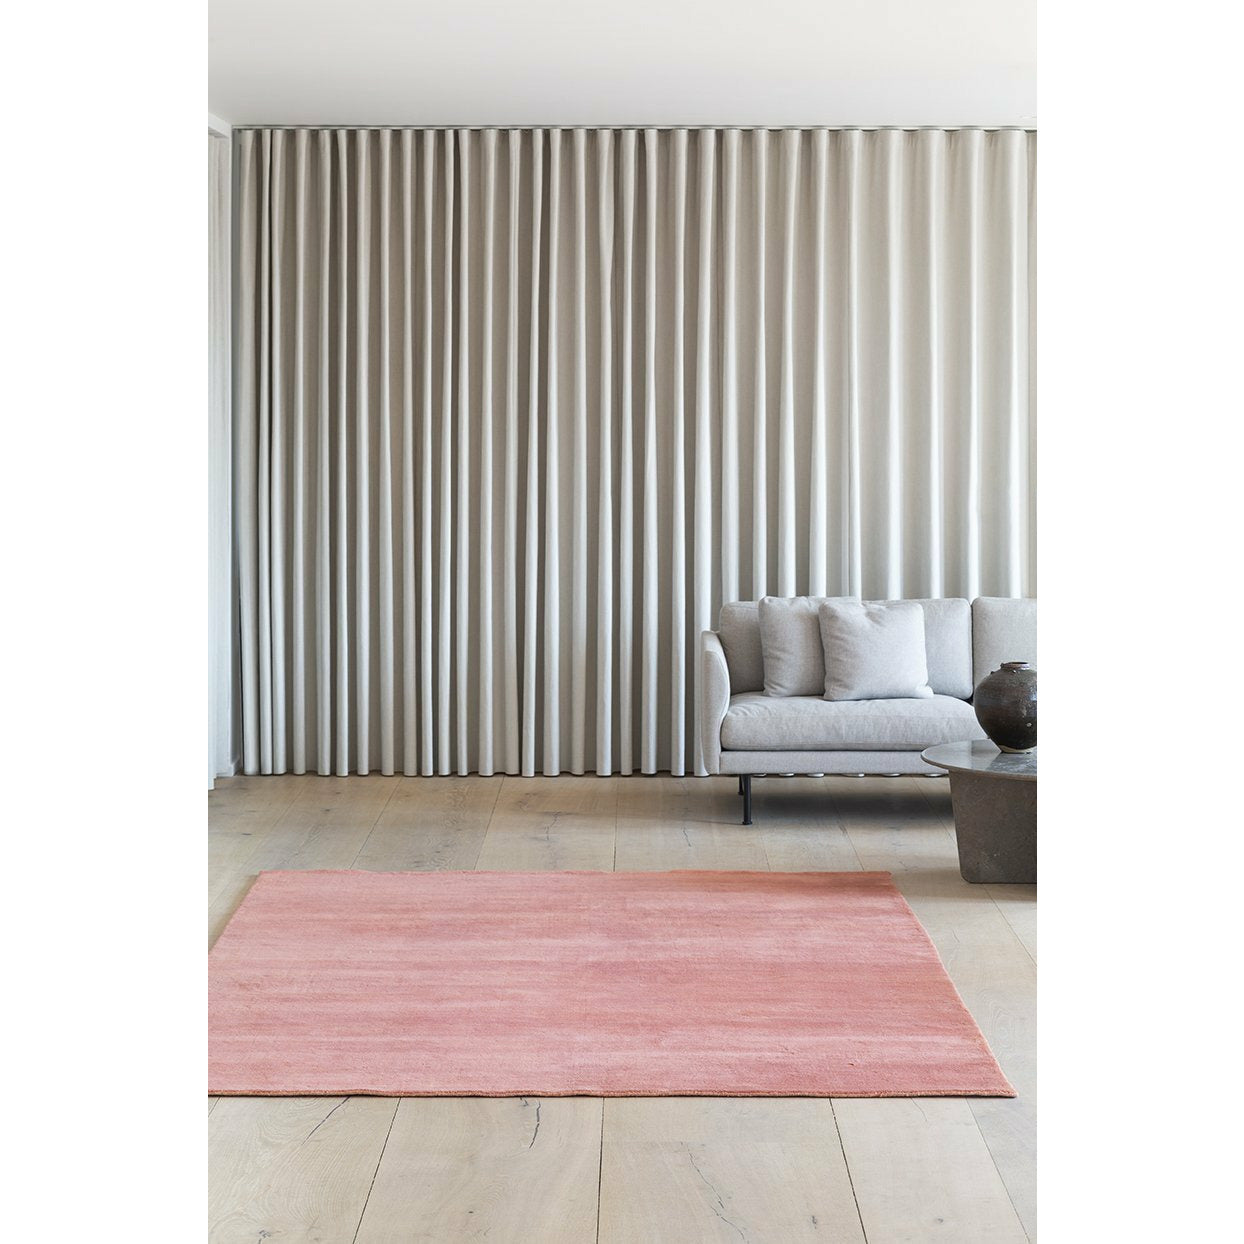 Massimo Earth Bambus Teppich Terrakotta, 170x240 cm